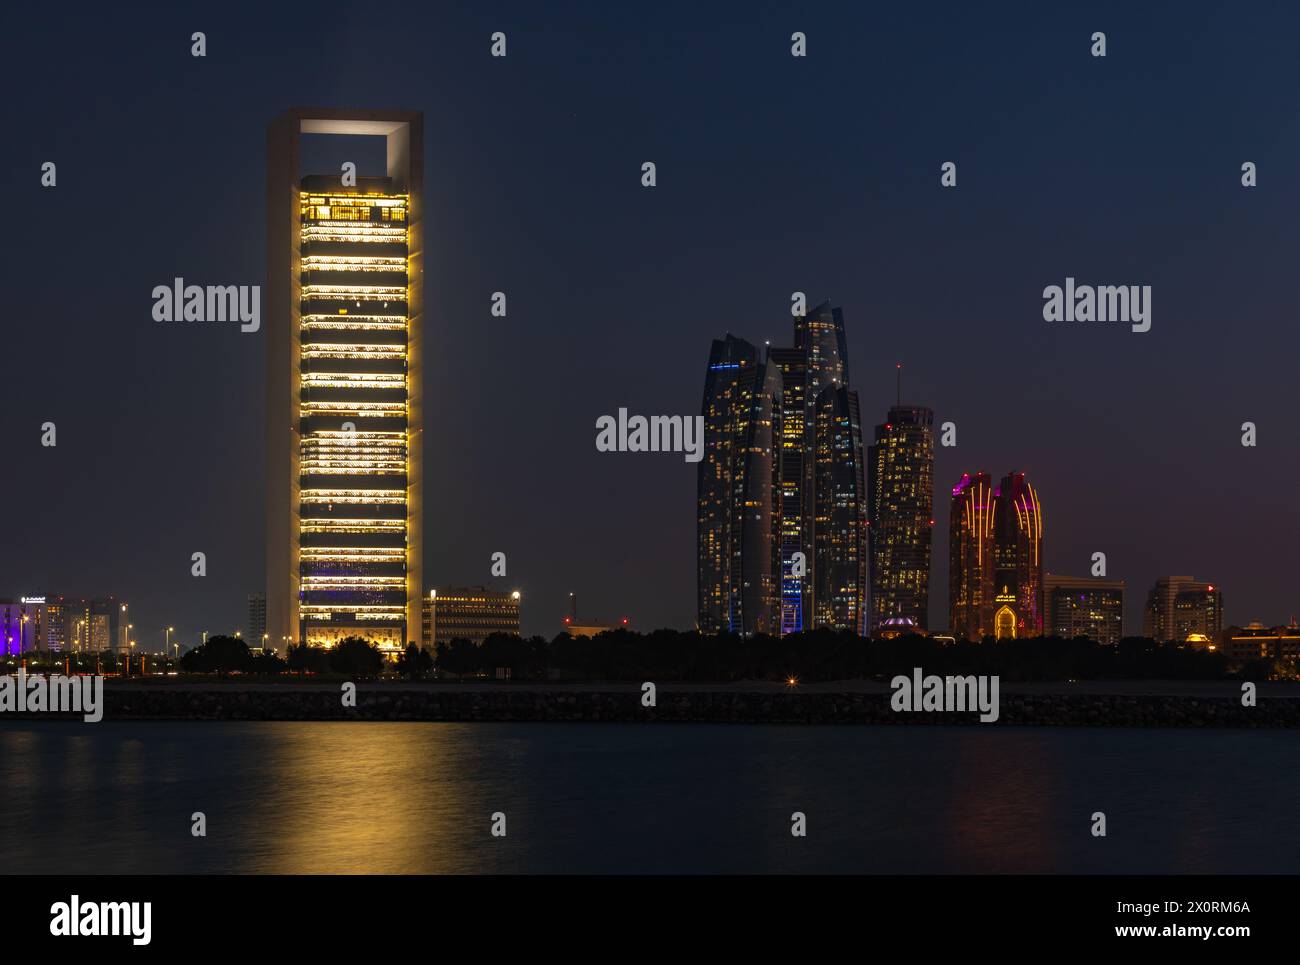 Ein Bild der Etihad Towers und des Hauptquartiers der Abu Dhabi National Oil Company bei Nacht. Stockfoto